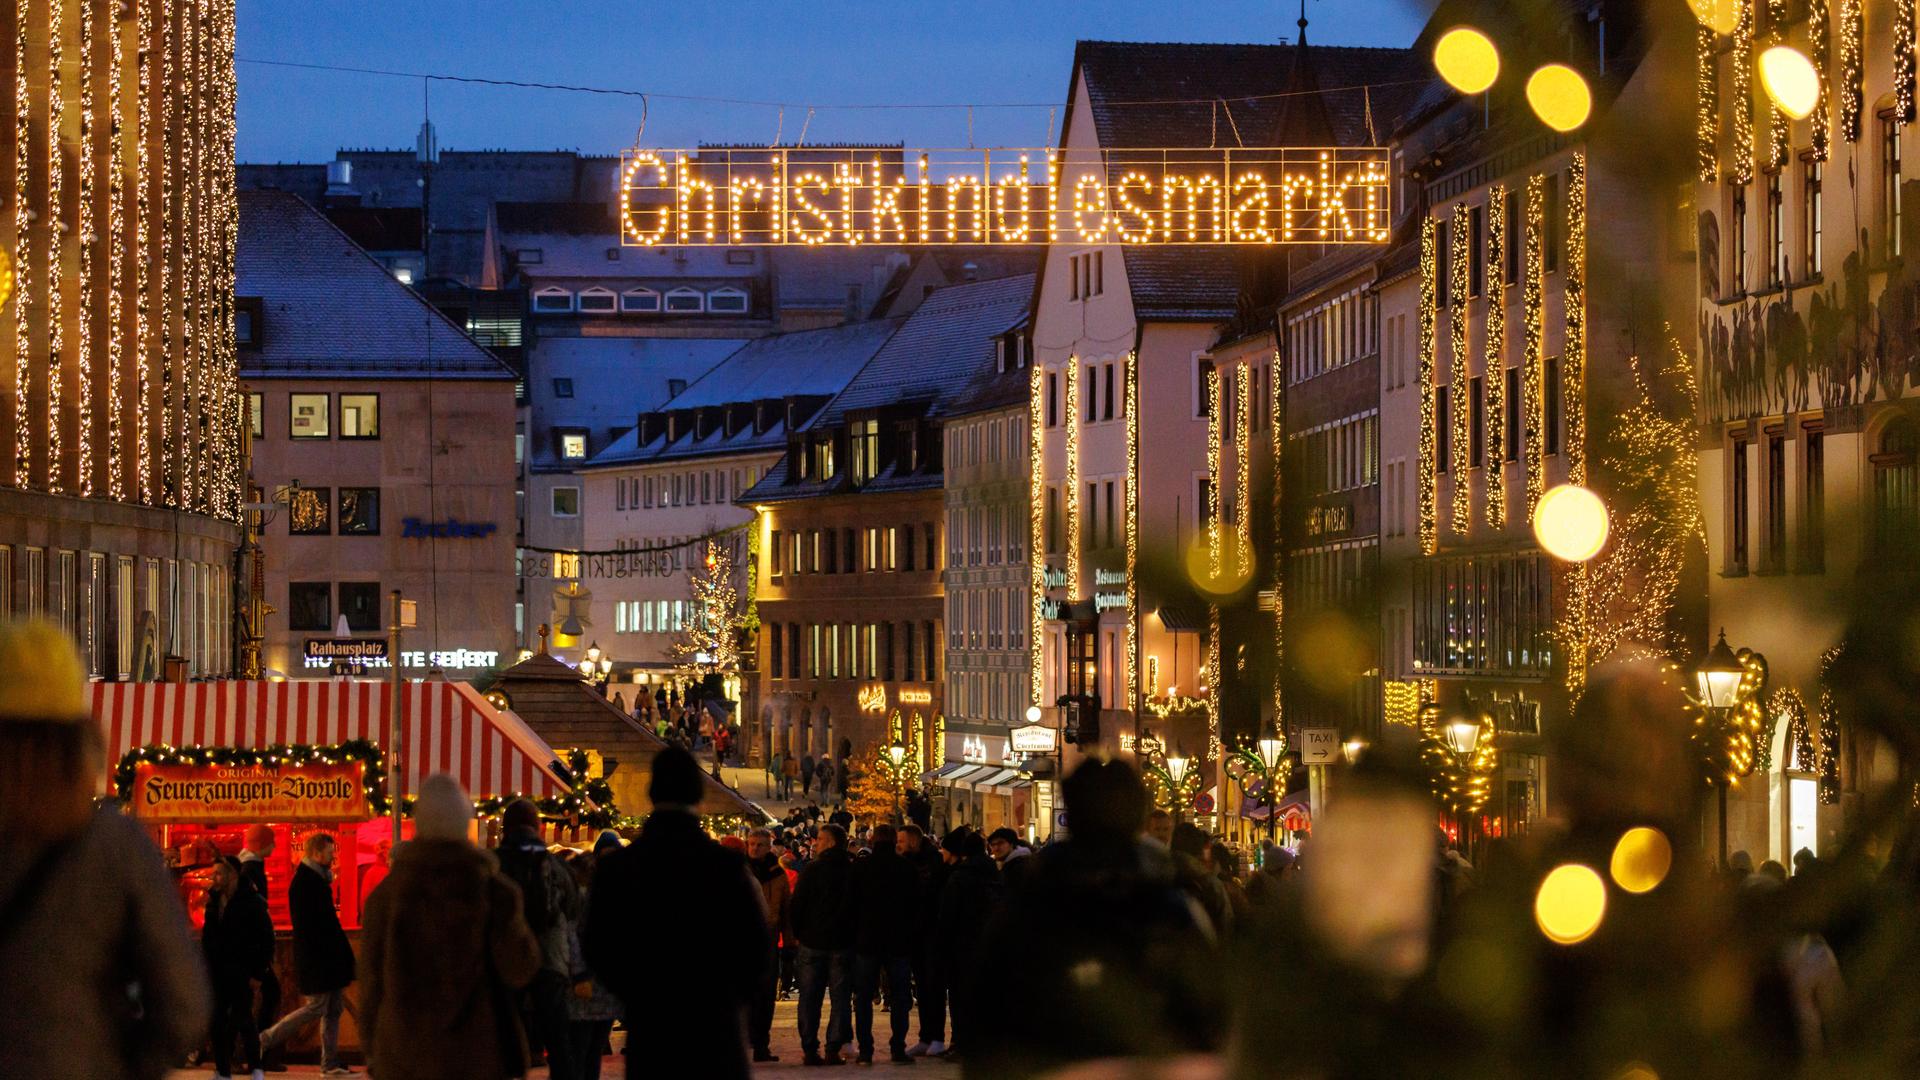 Der Leuchtschriftzug "Christkindlesmarkt" hängt über dem Gehweg zum Nürnberger Weihnachtsmarkt.